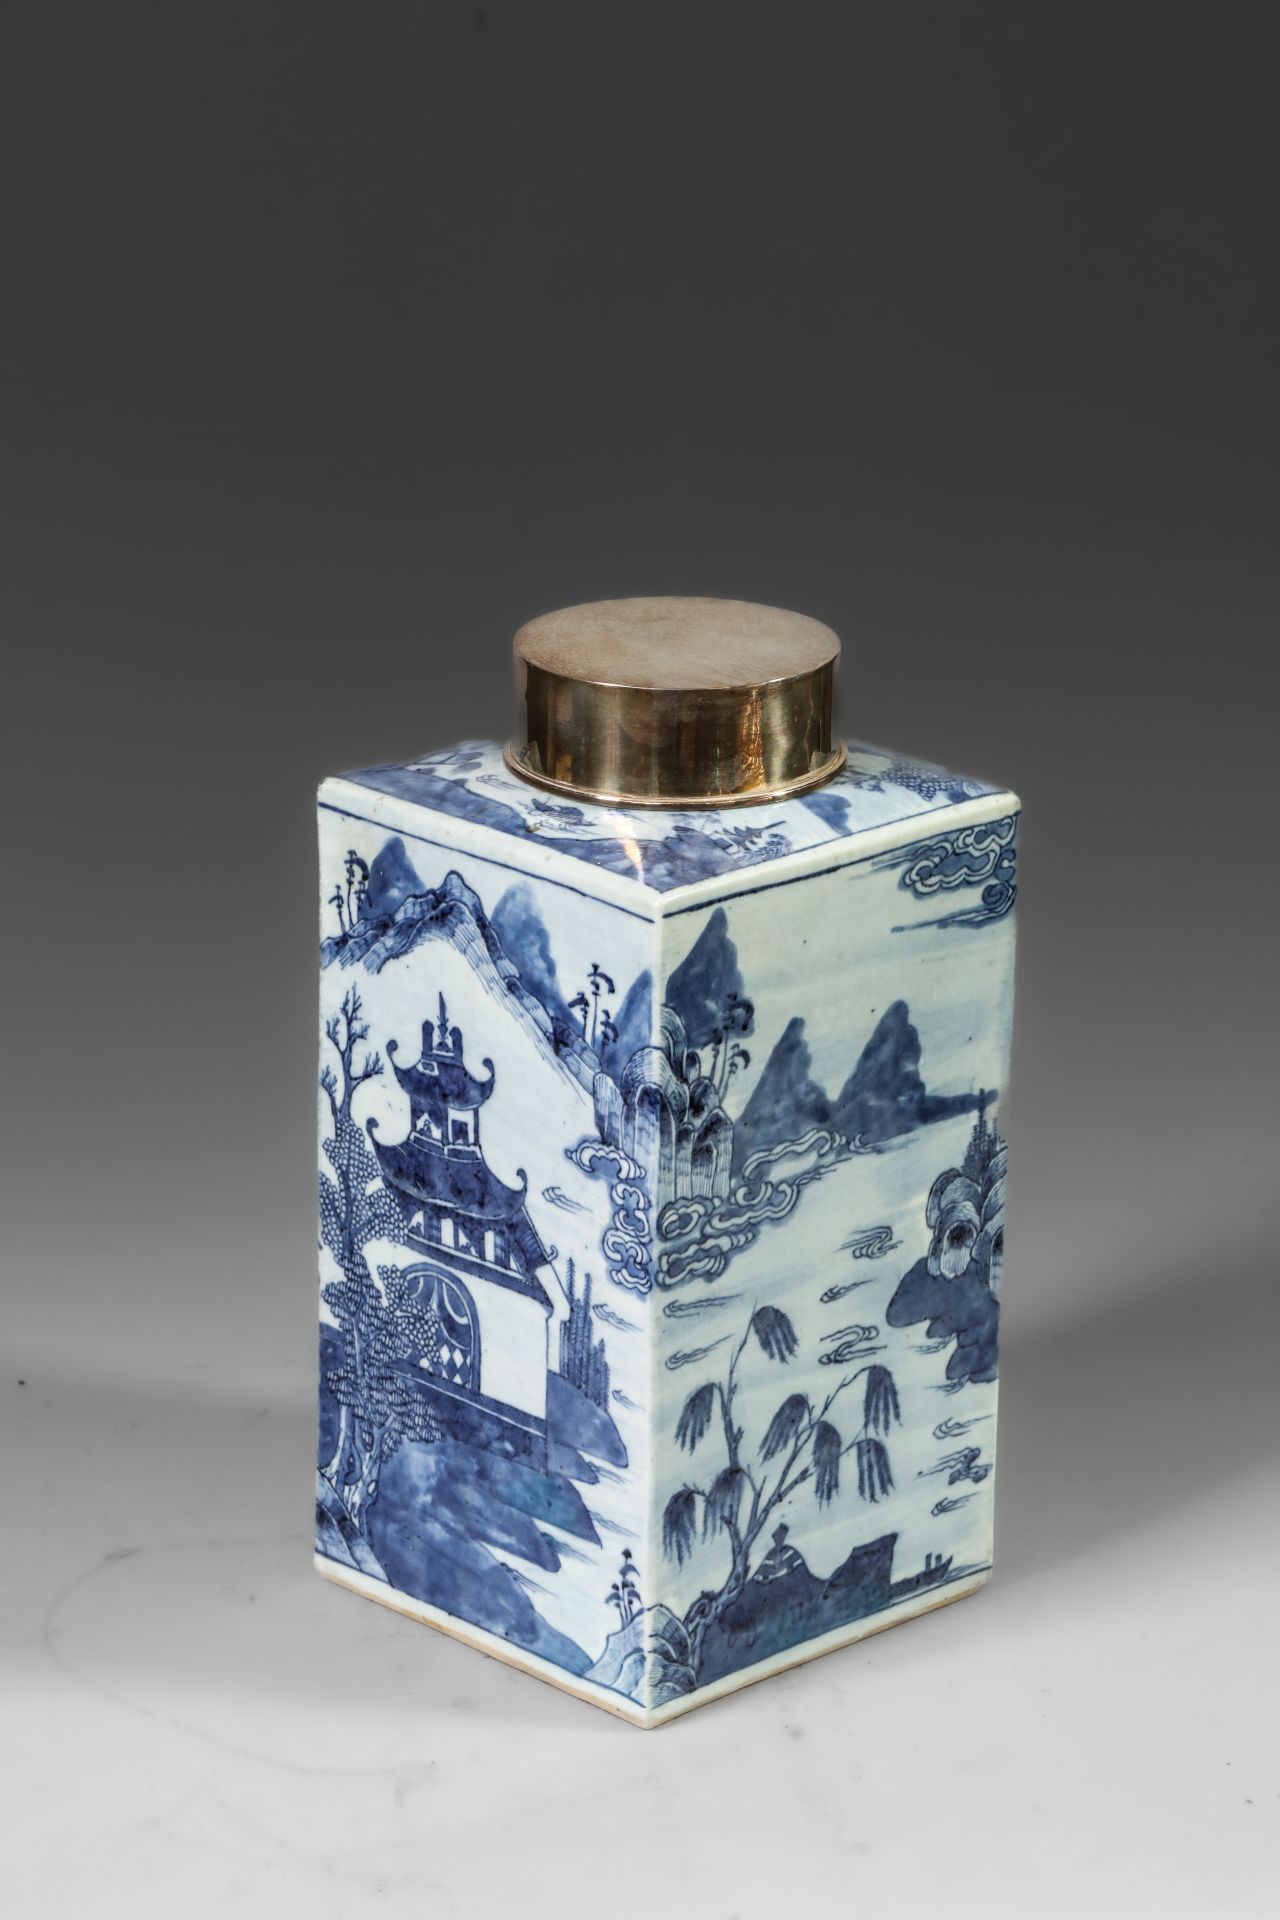 Suite de neuf pots à thé quadrangulaire en porcelaine blanche décoré en bleu sous couverte de - Image 3 of 47